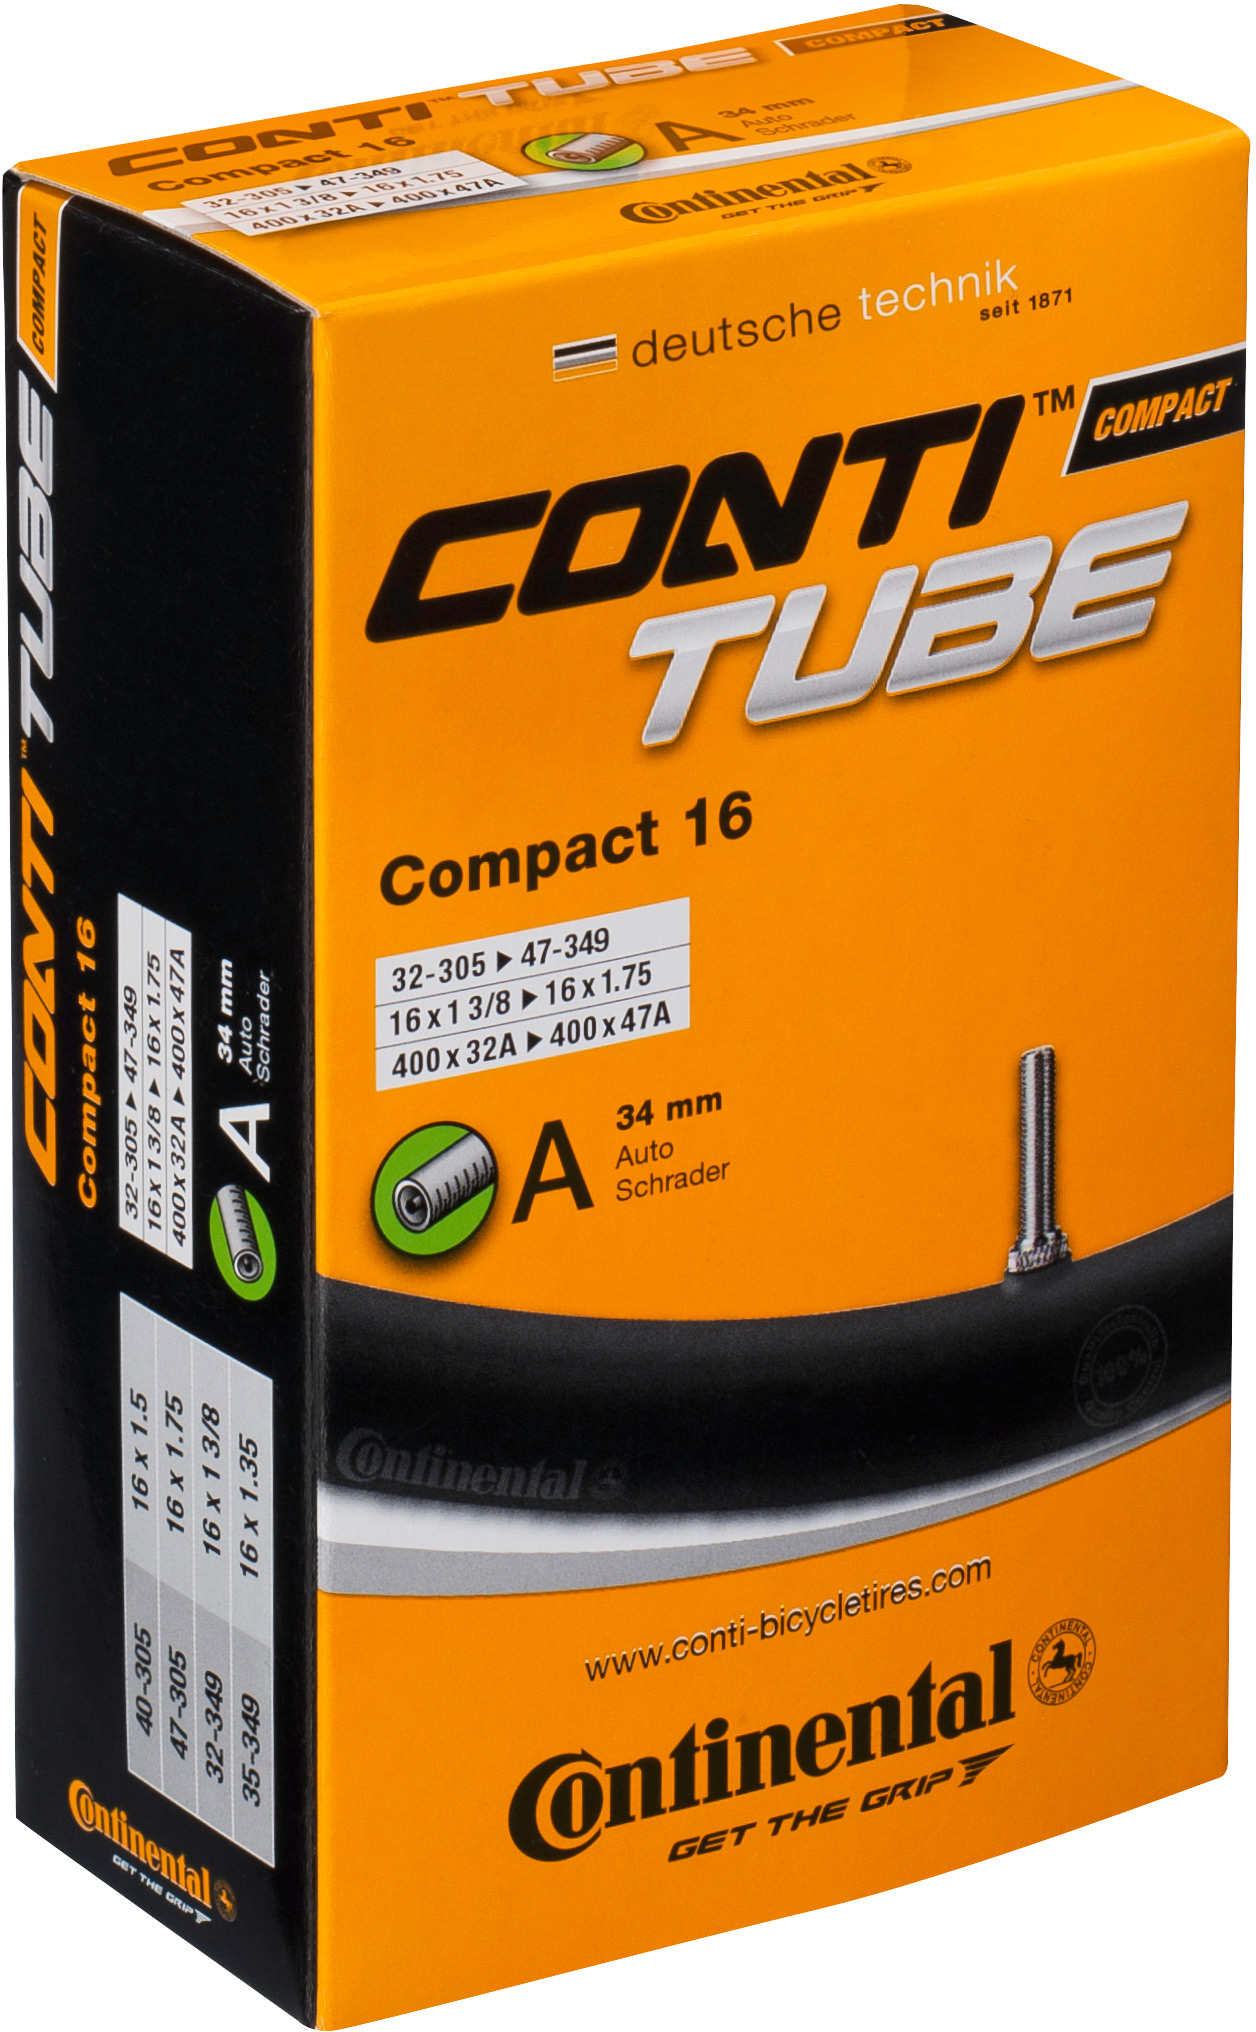 tube-con-compact-24-innertube-schrader-valve